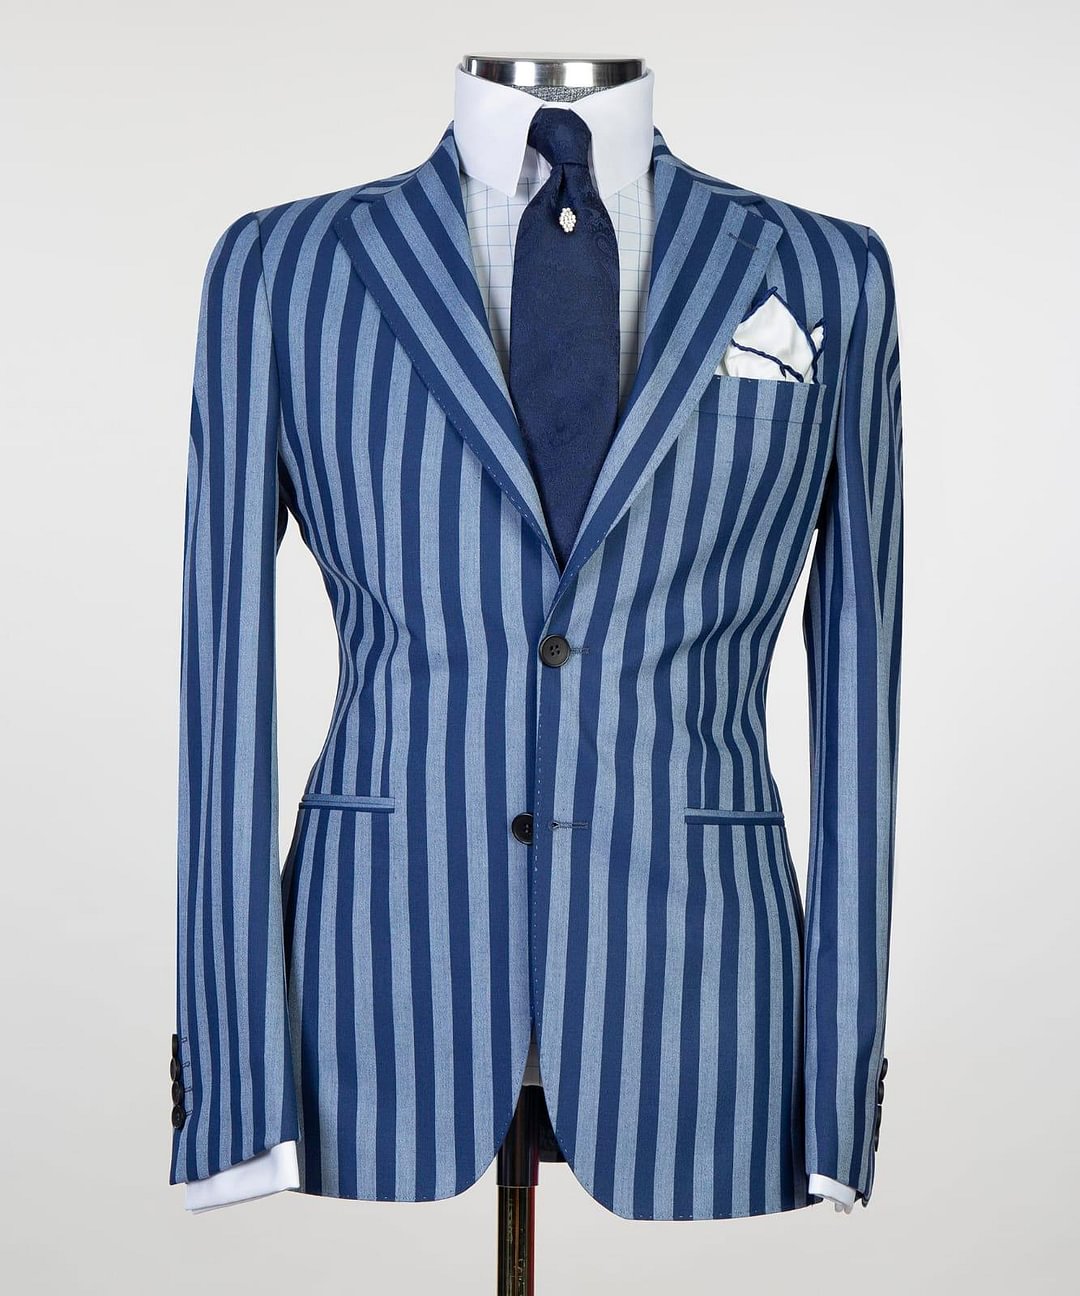 Men's light and dark blue striped 2pcs suit.